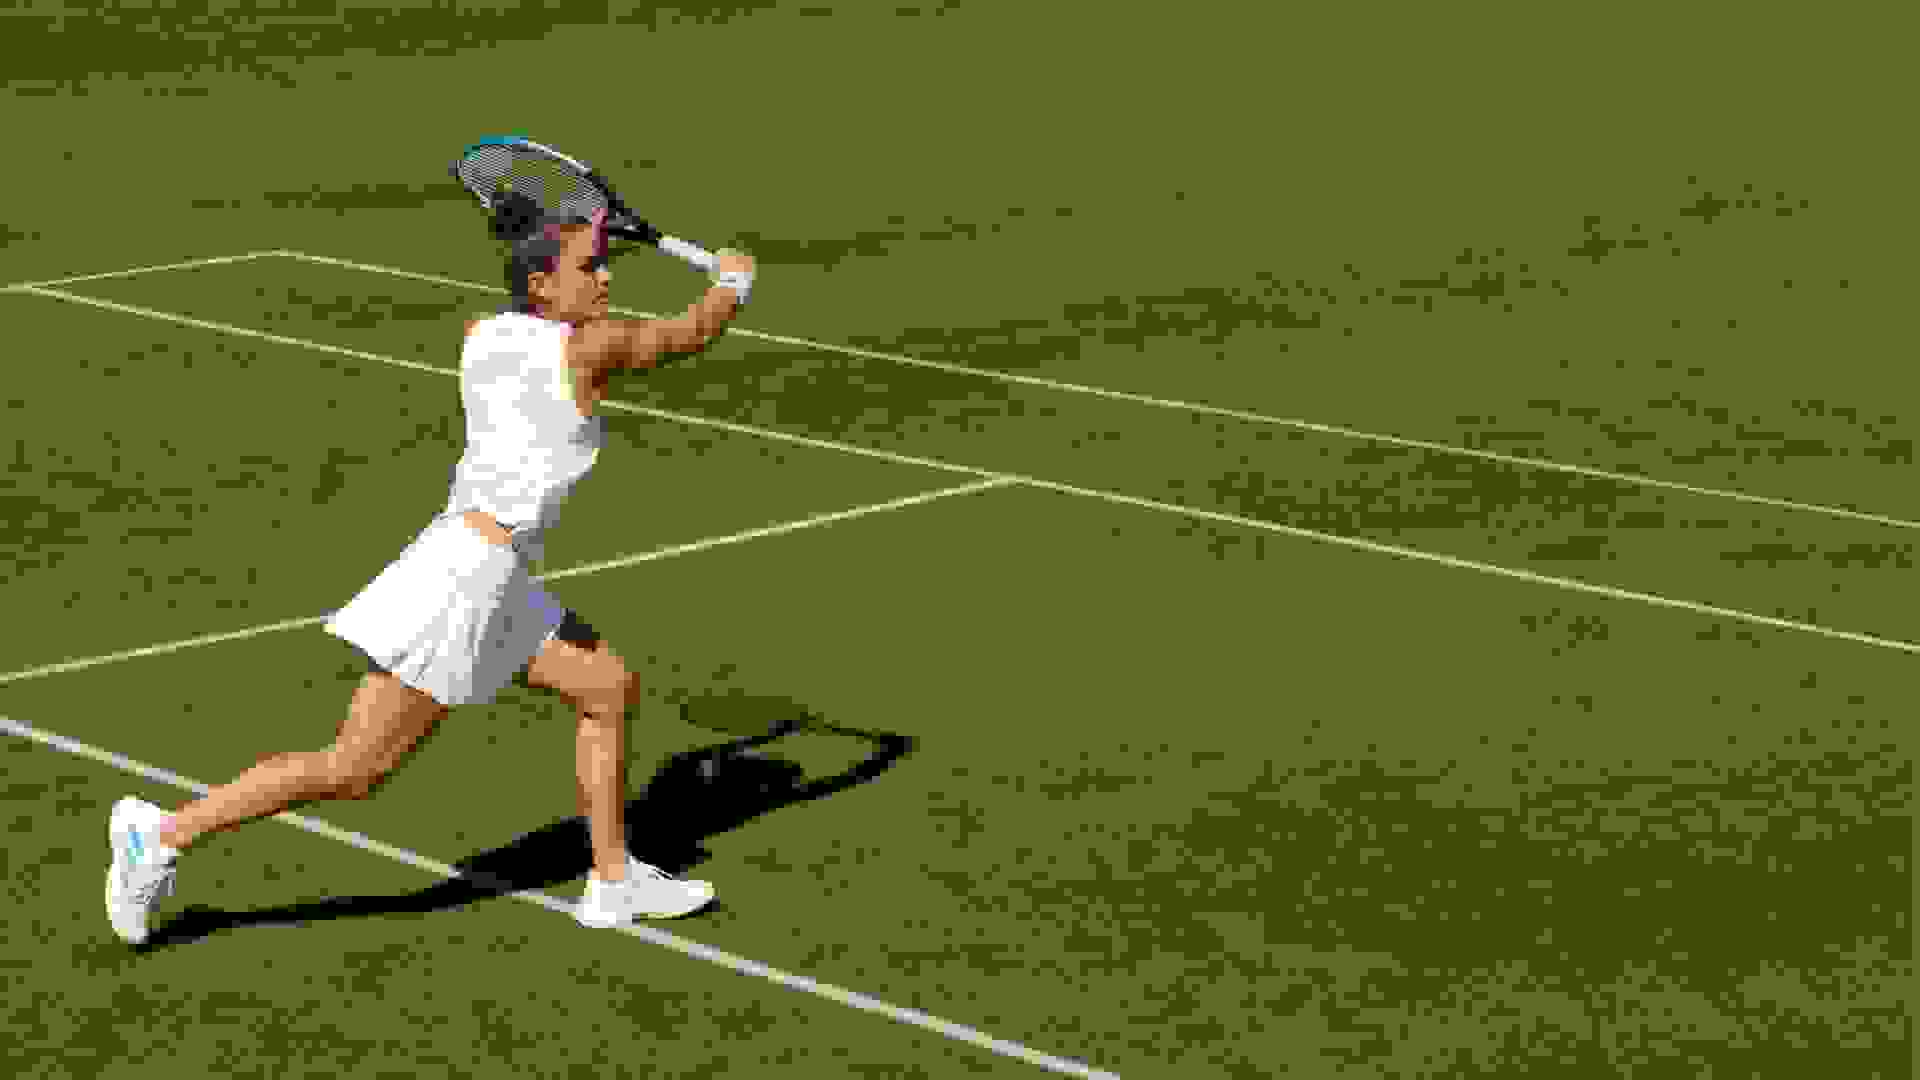 Sakkari playing tennis on a green court